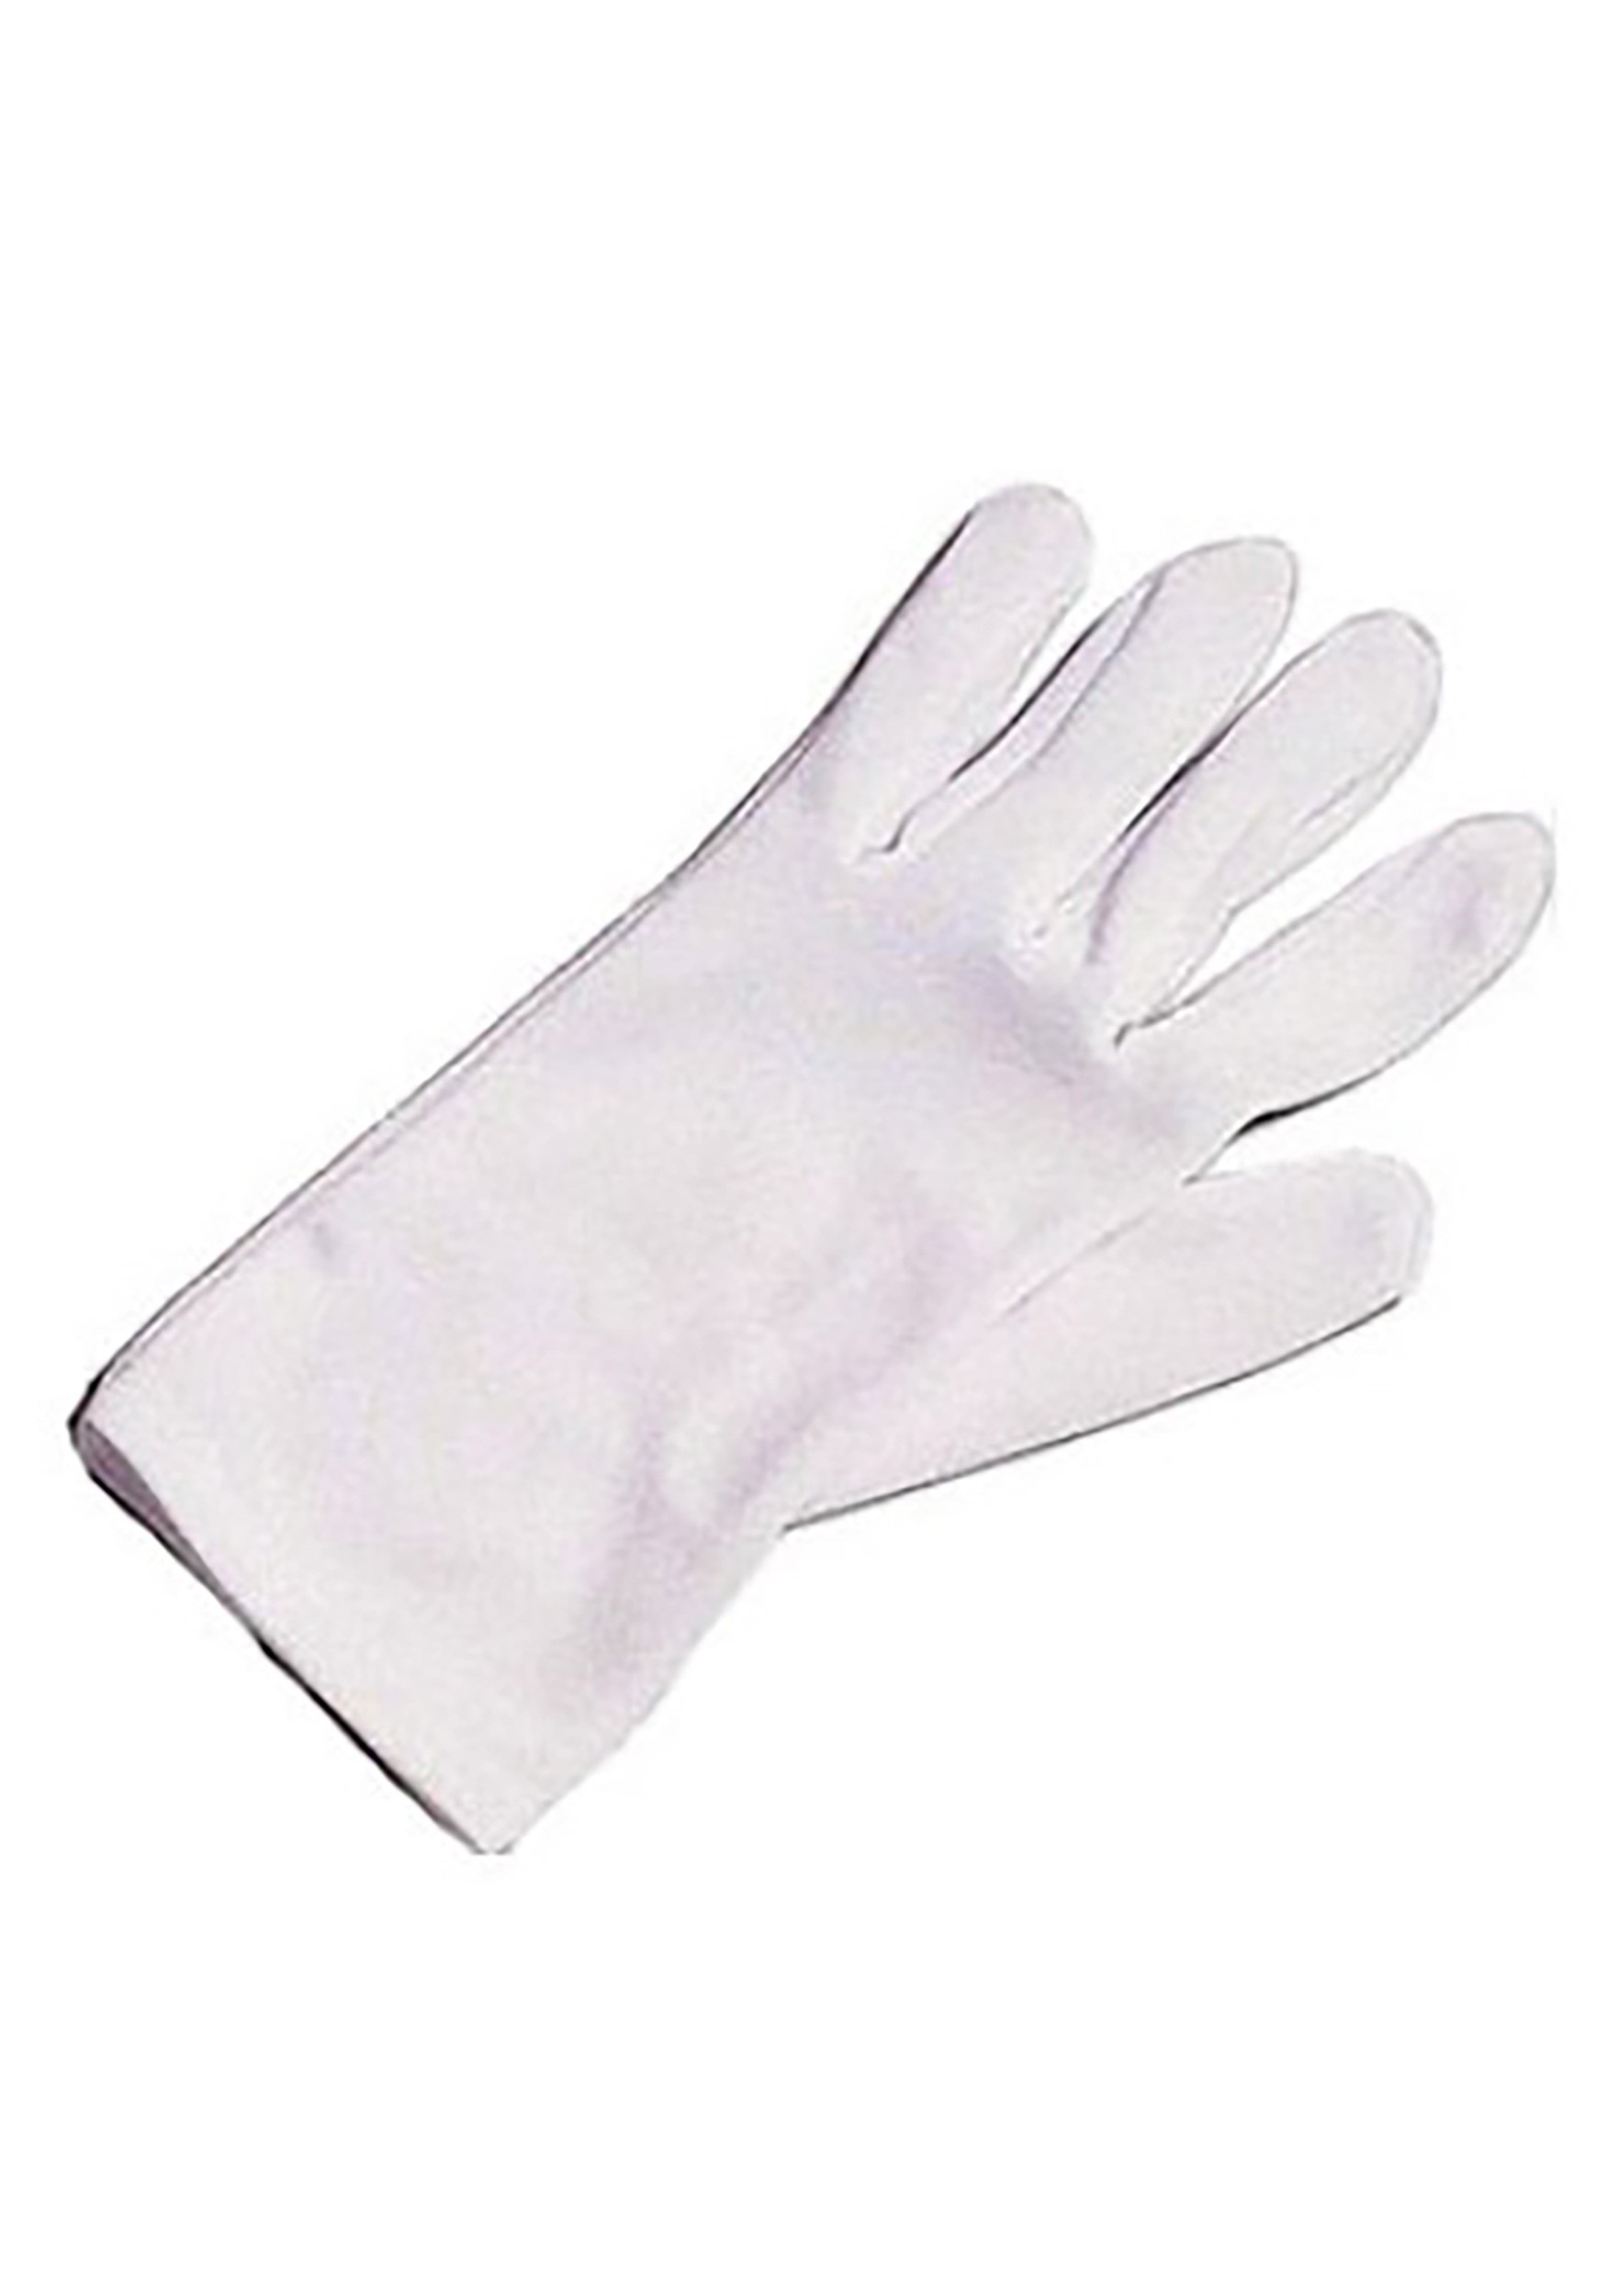 yeabwps 4 pares de guantes blancos de disfraz para niñas, guantes de  elastano para banquetes, disfraces de Halloween, baile, actuación, Blanco